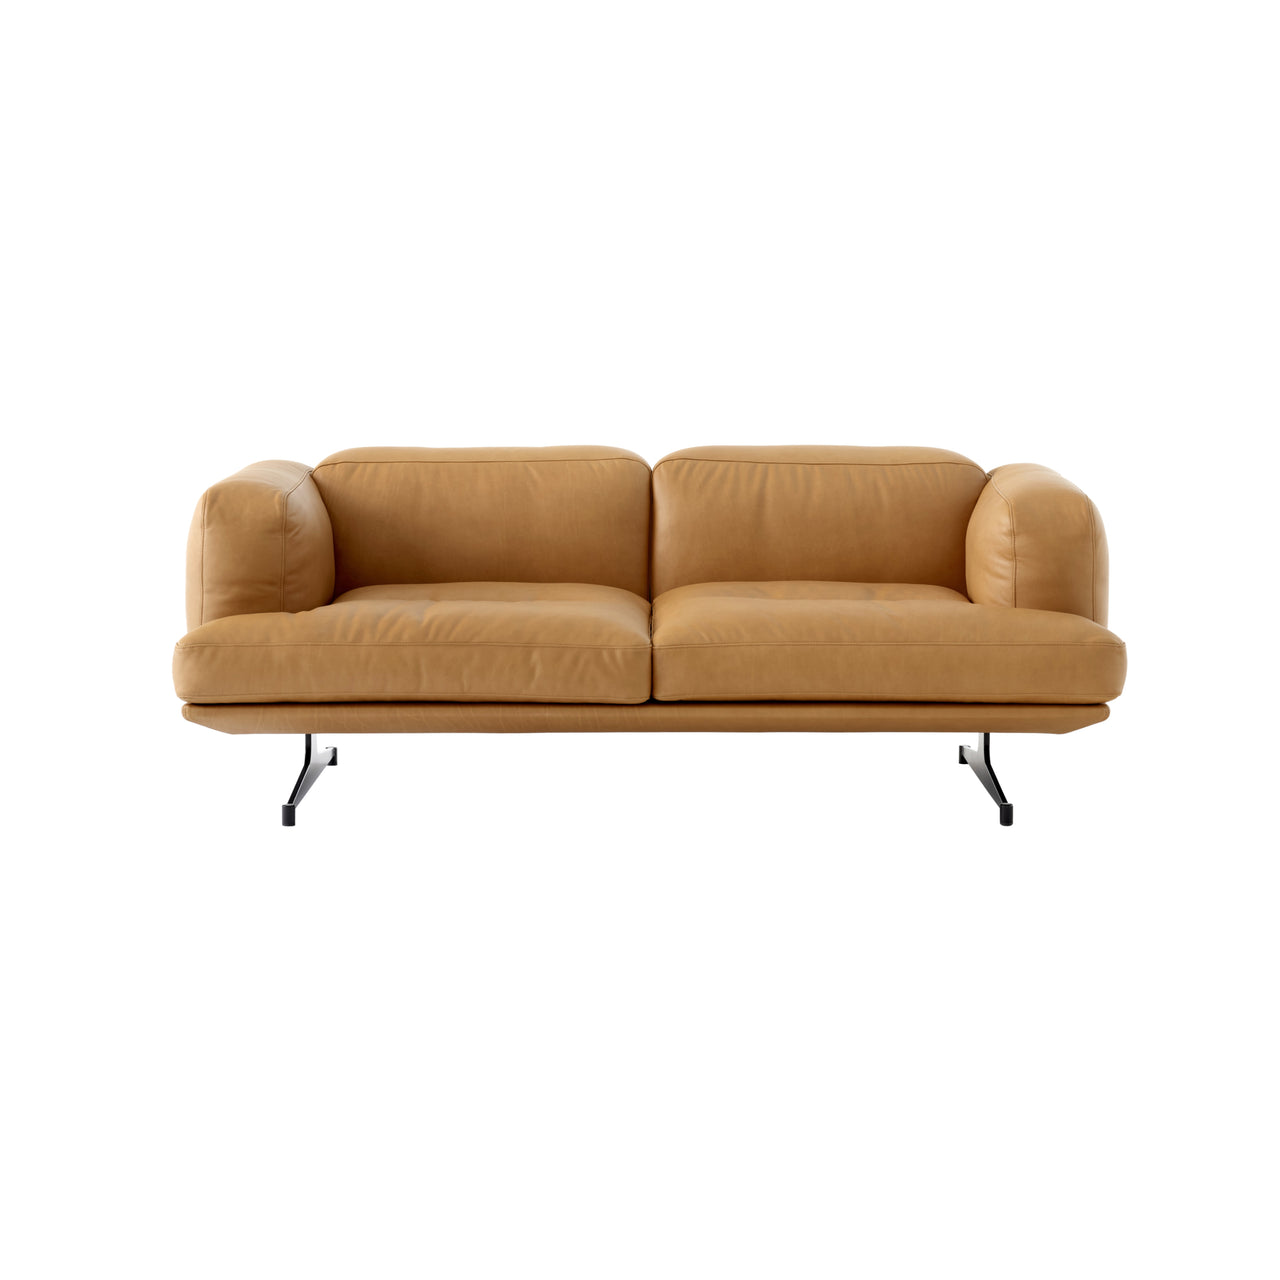 Inland Sofa: AV22 + AV23 + 2 Seater + Cognac Noble Leather